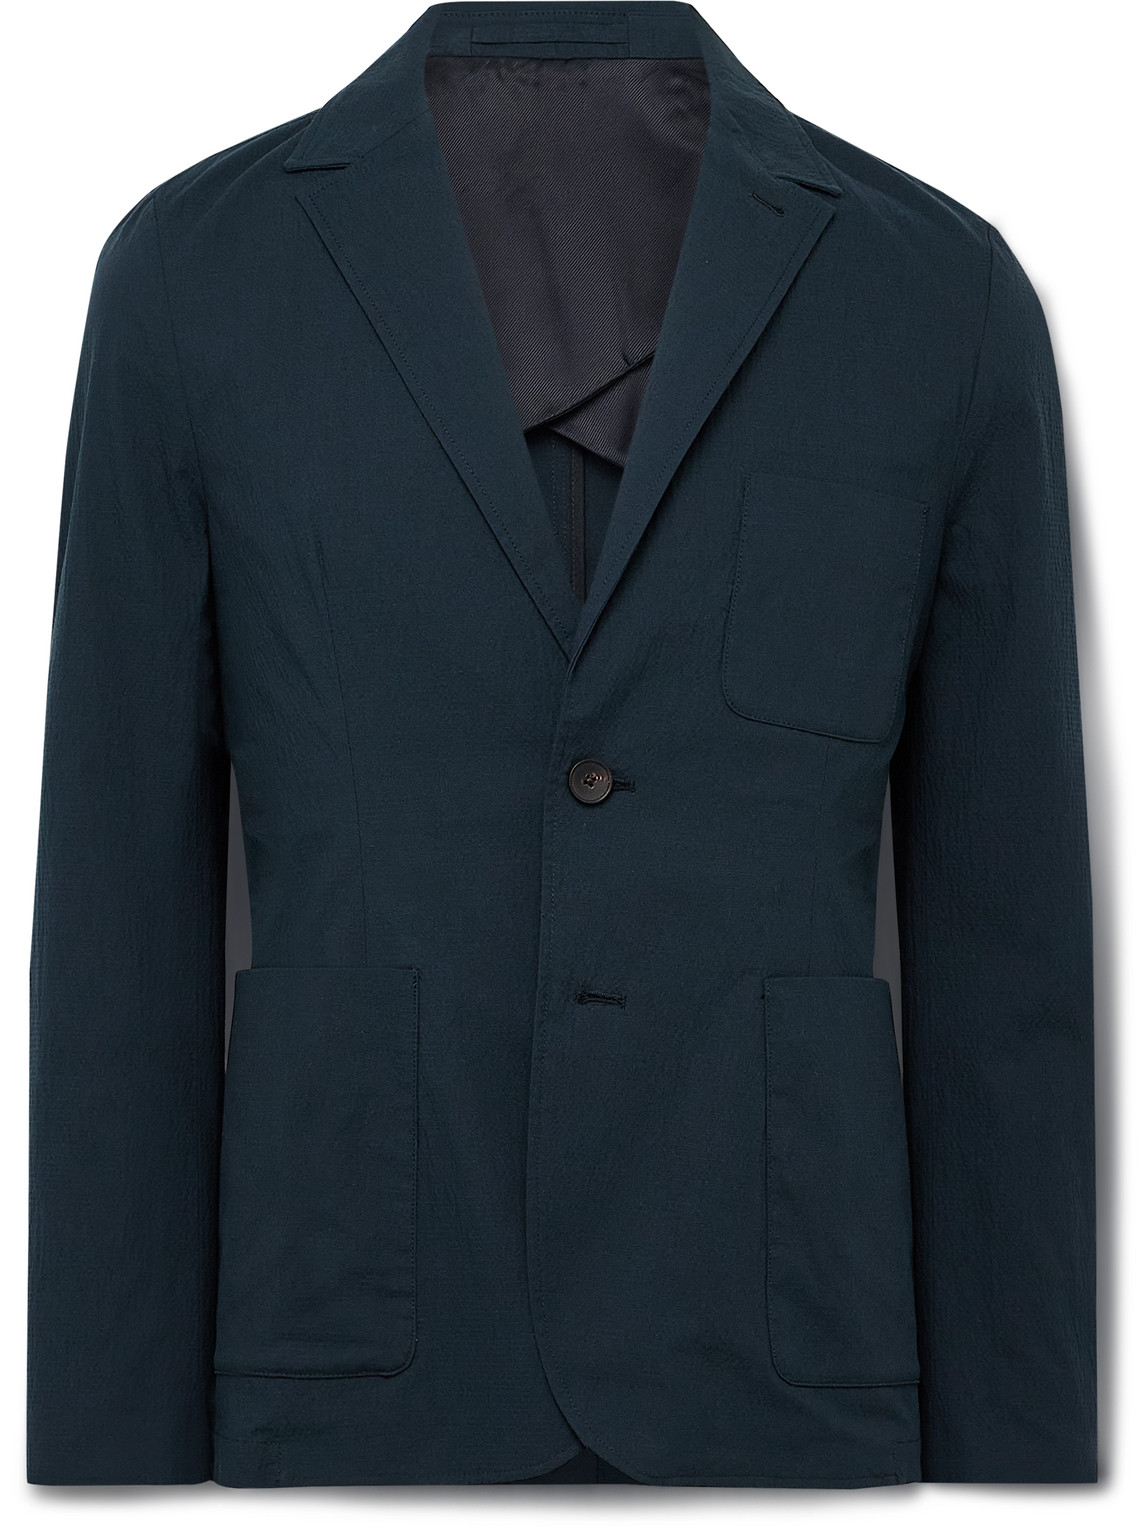 Cotton-Blend Seersucker Suit Jacket